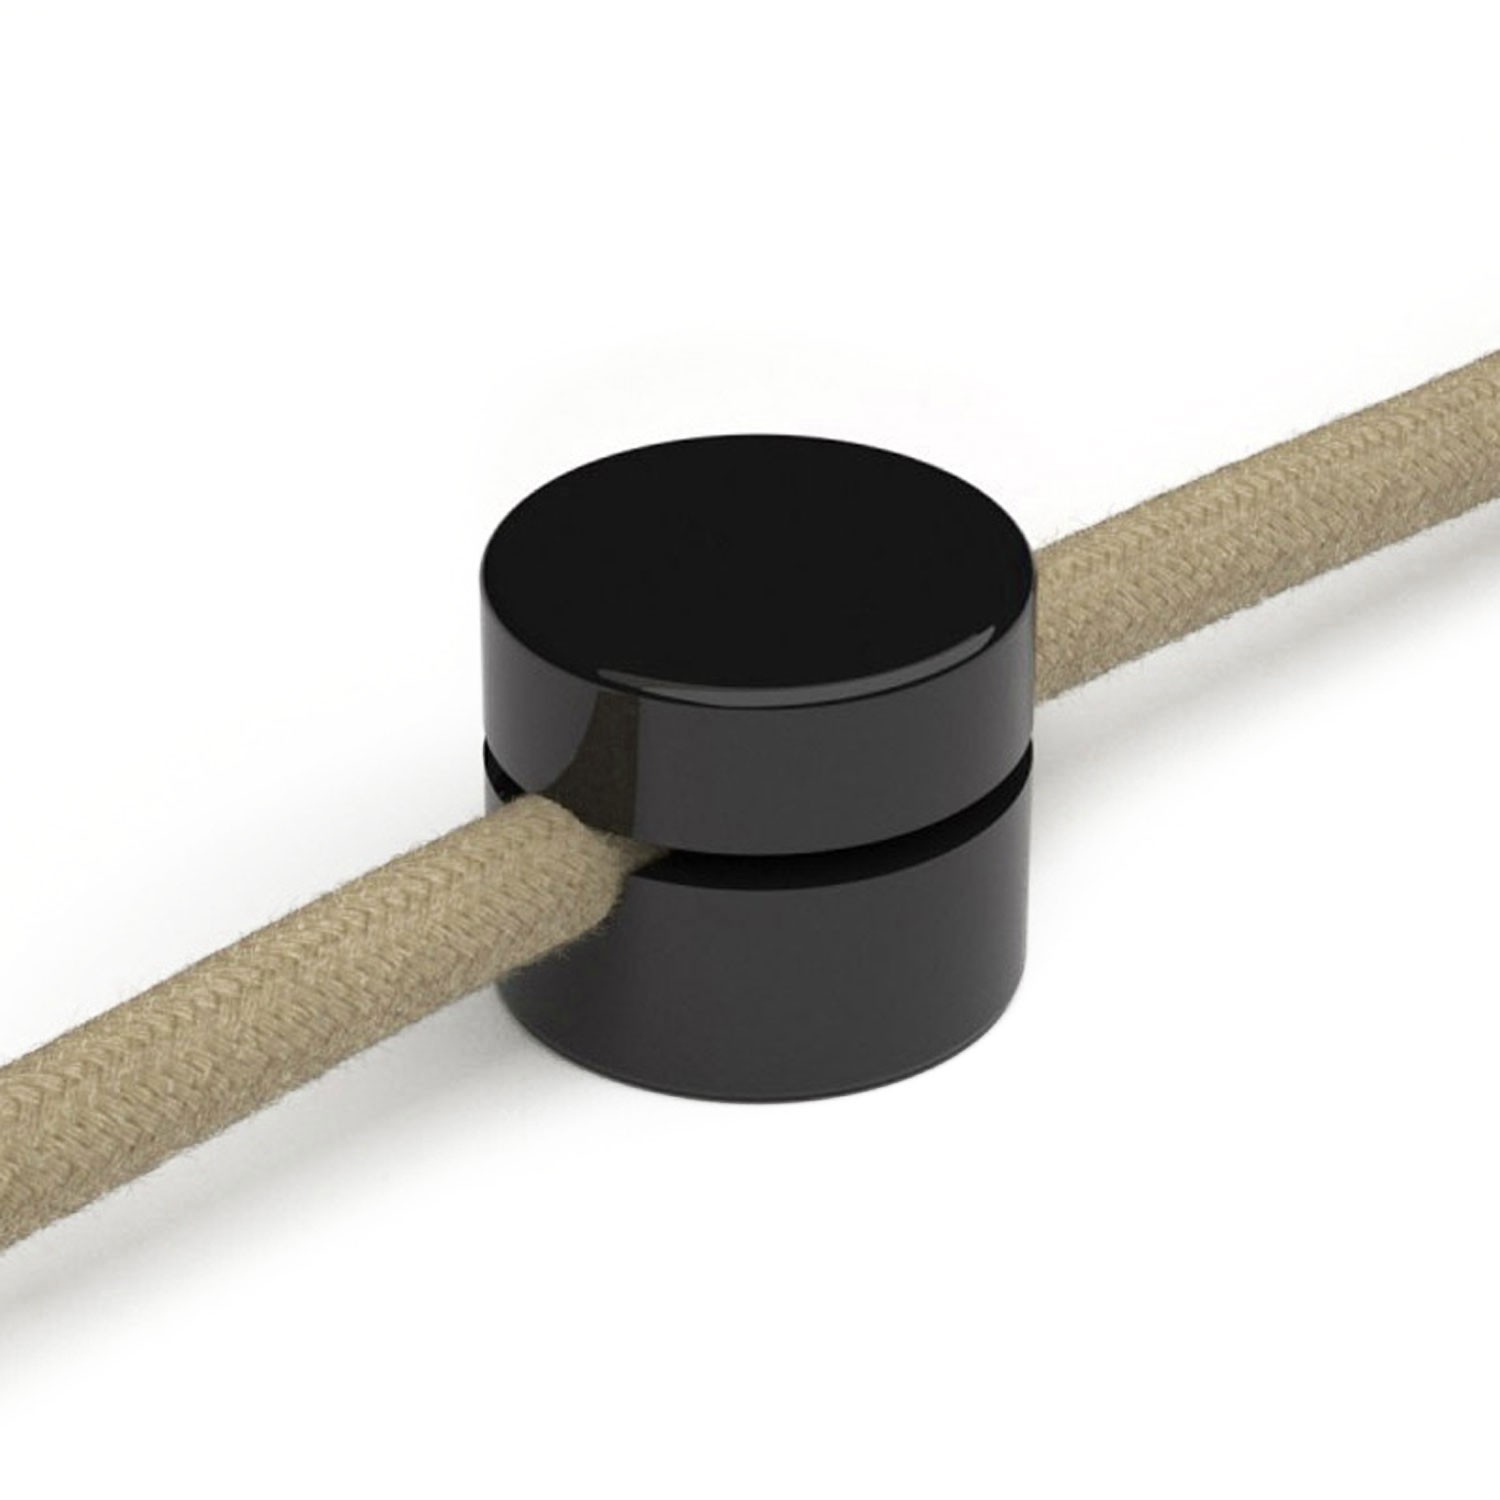 Univerzální nástěnná kabelová svorka pro textilní elektrické kabely se širším průměrem 3x1 e 3x1,5 and for EIVA system -2 pieces